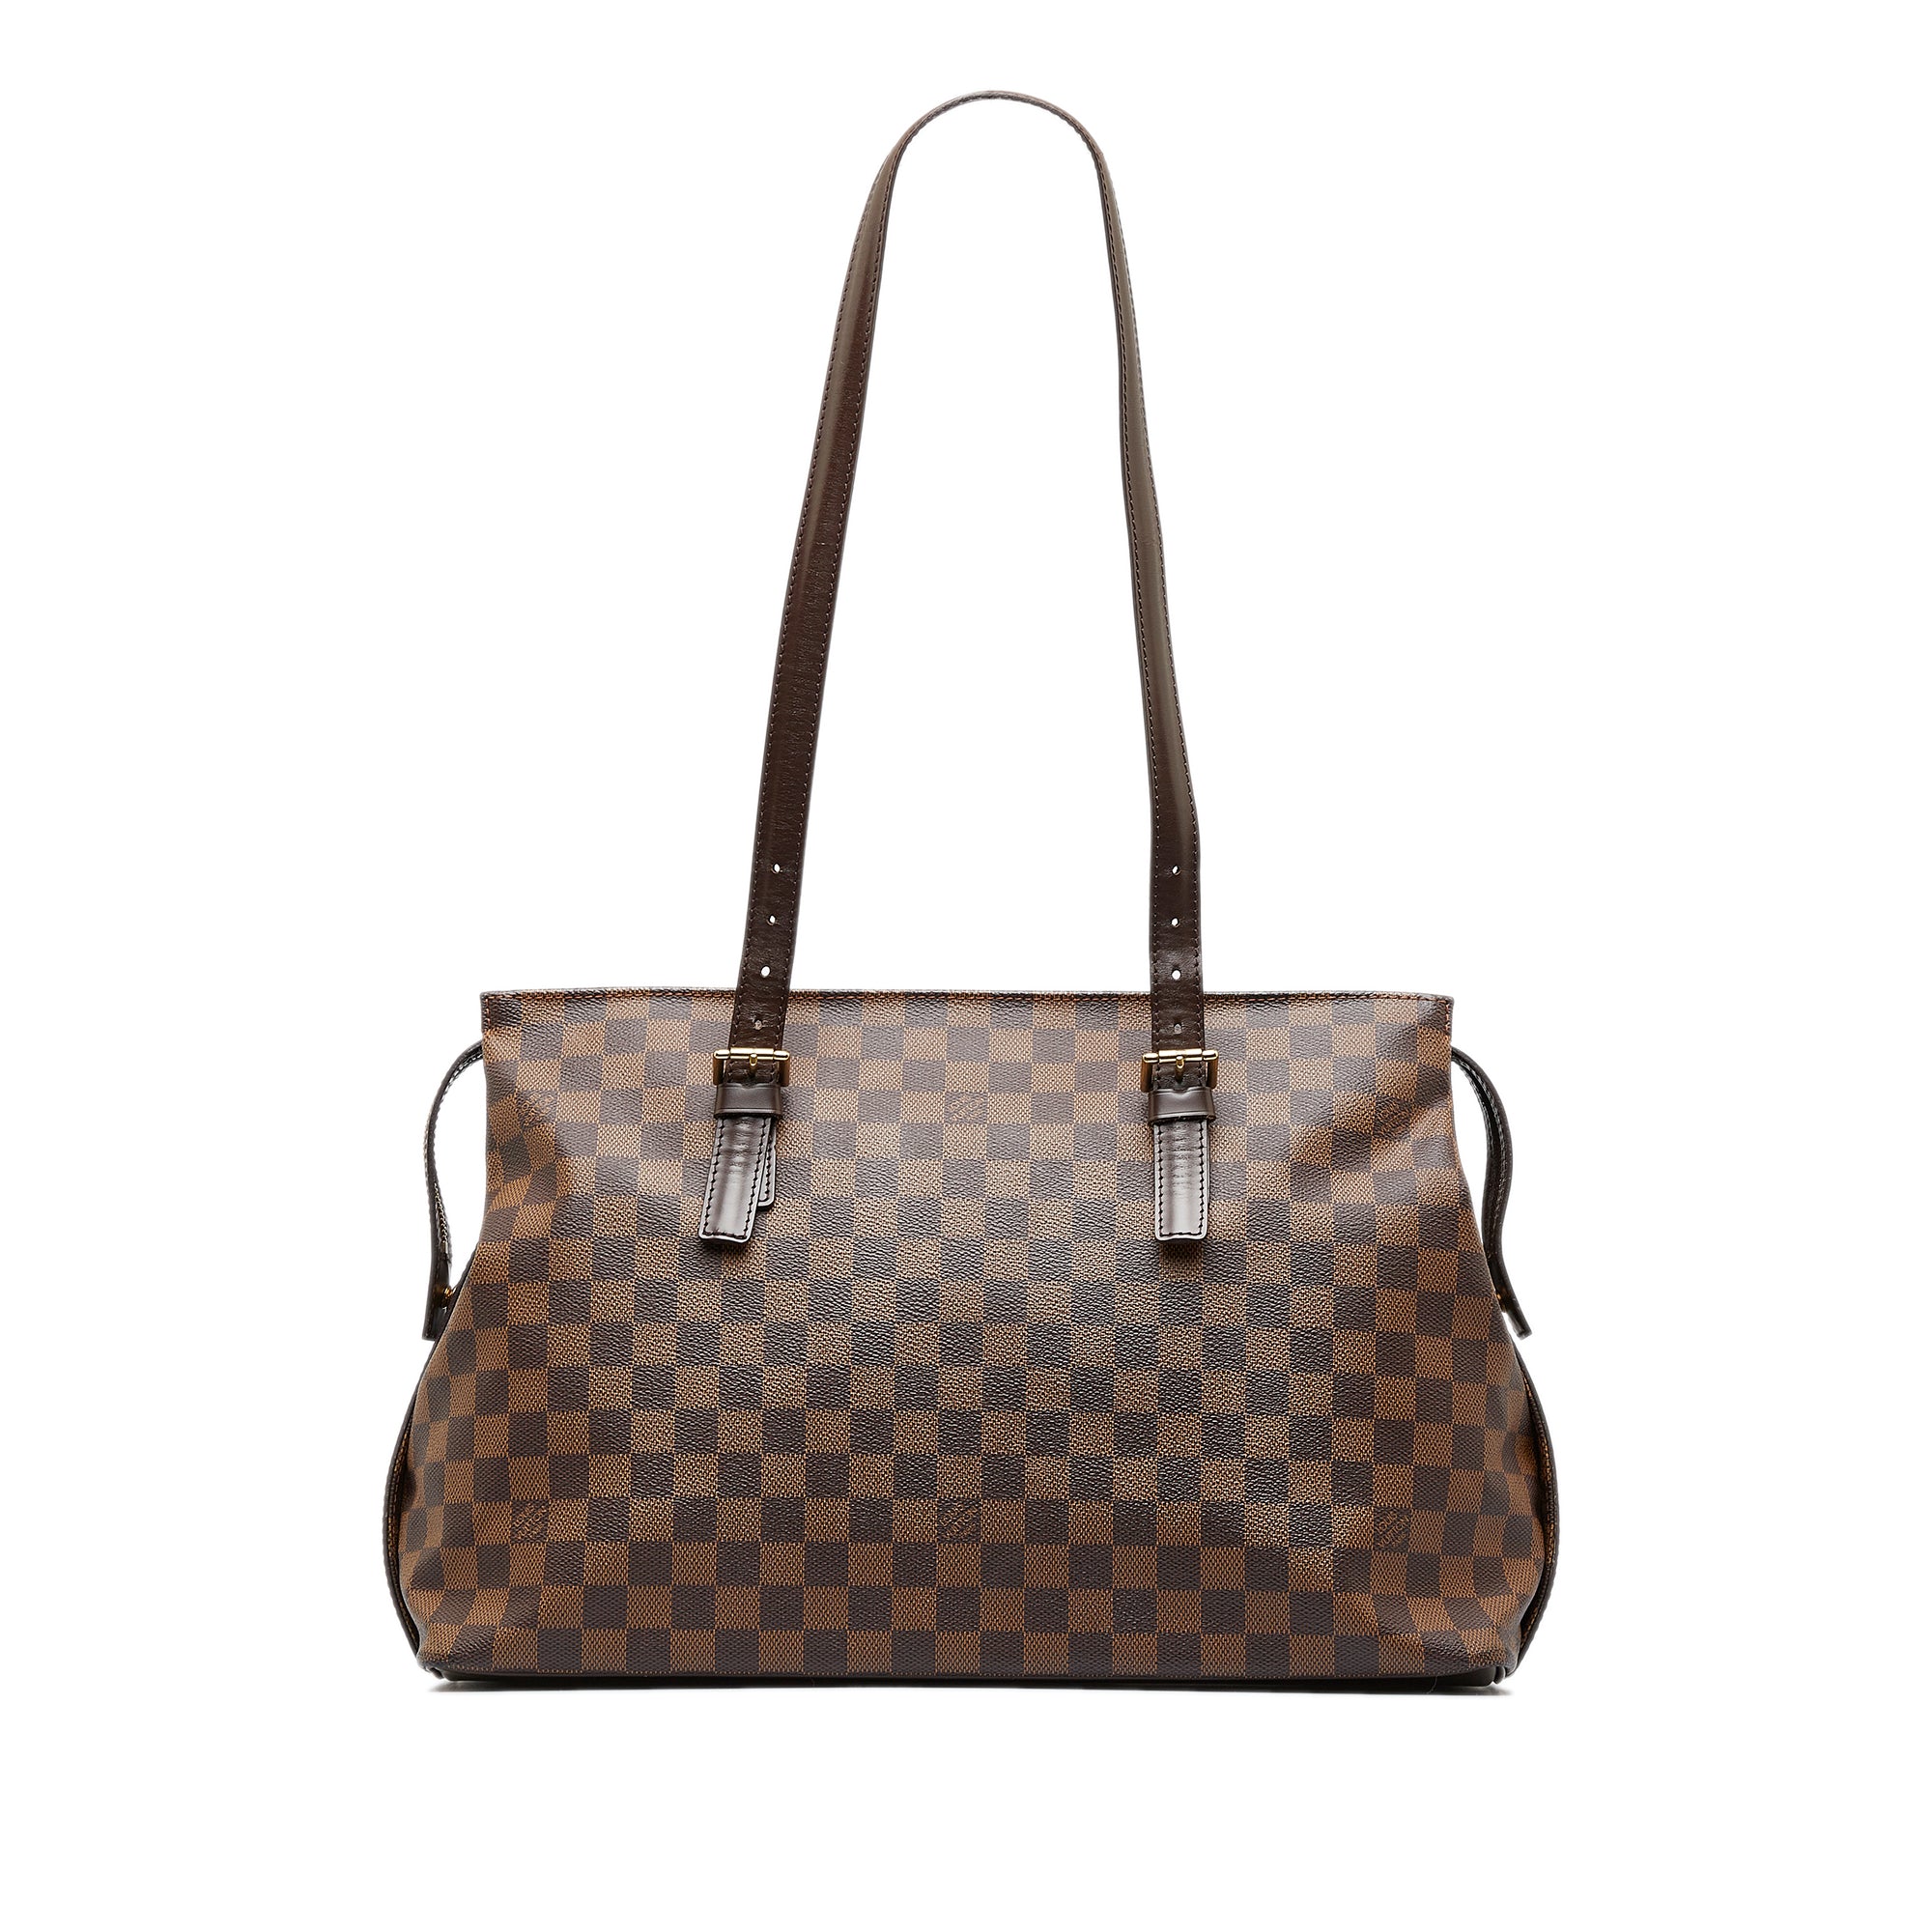 Louis Vuitton e L.E. sling messenger bag in damier ebene